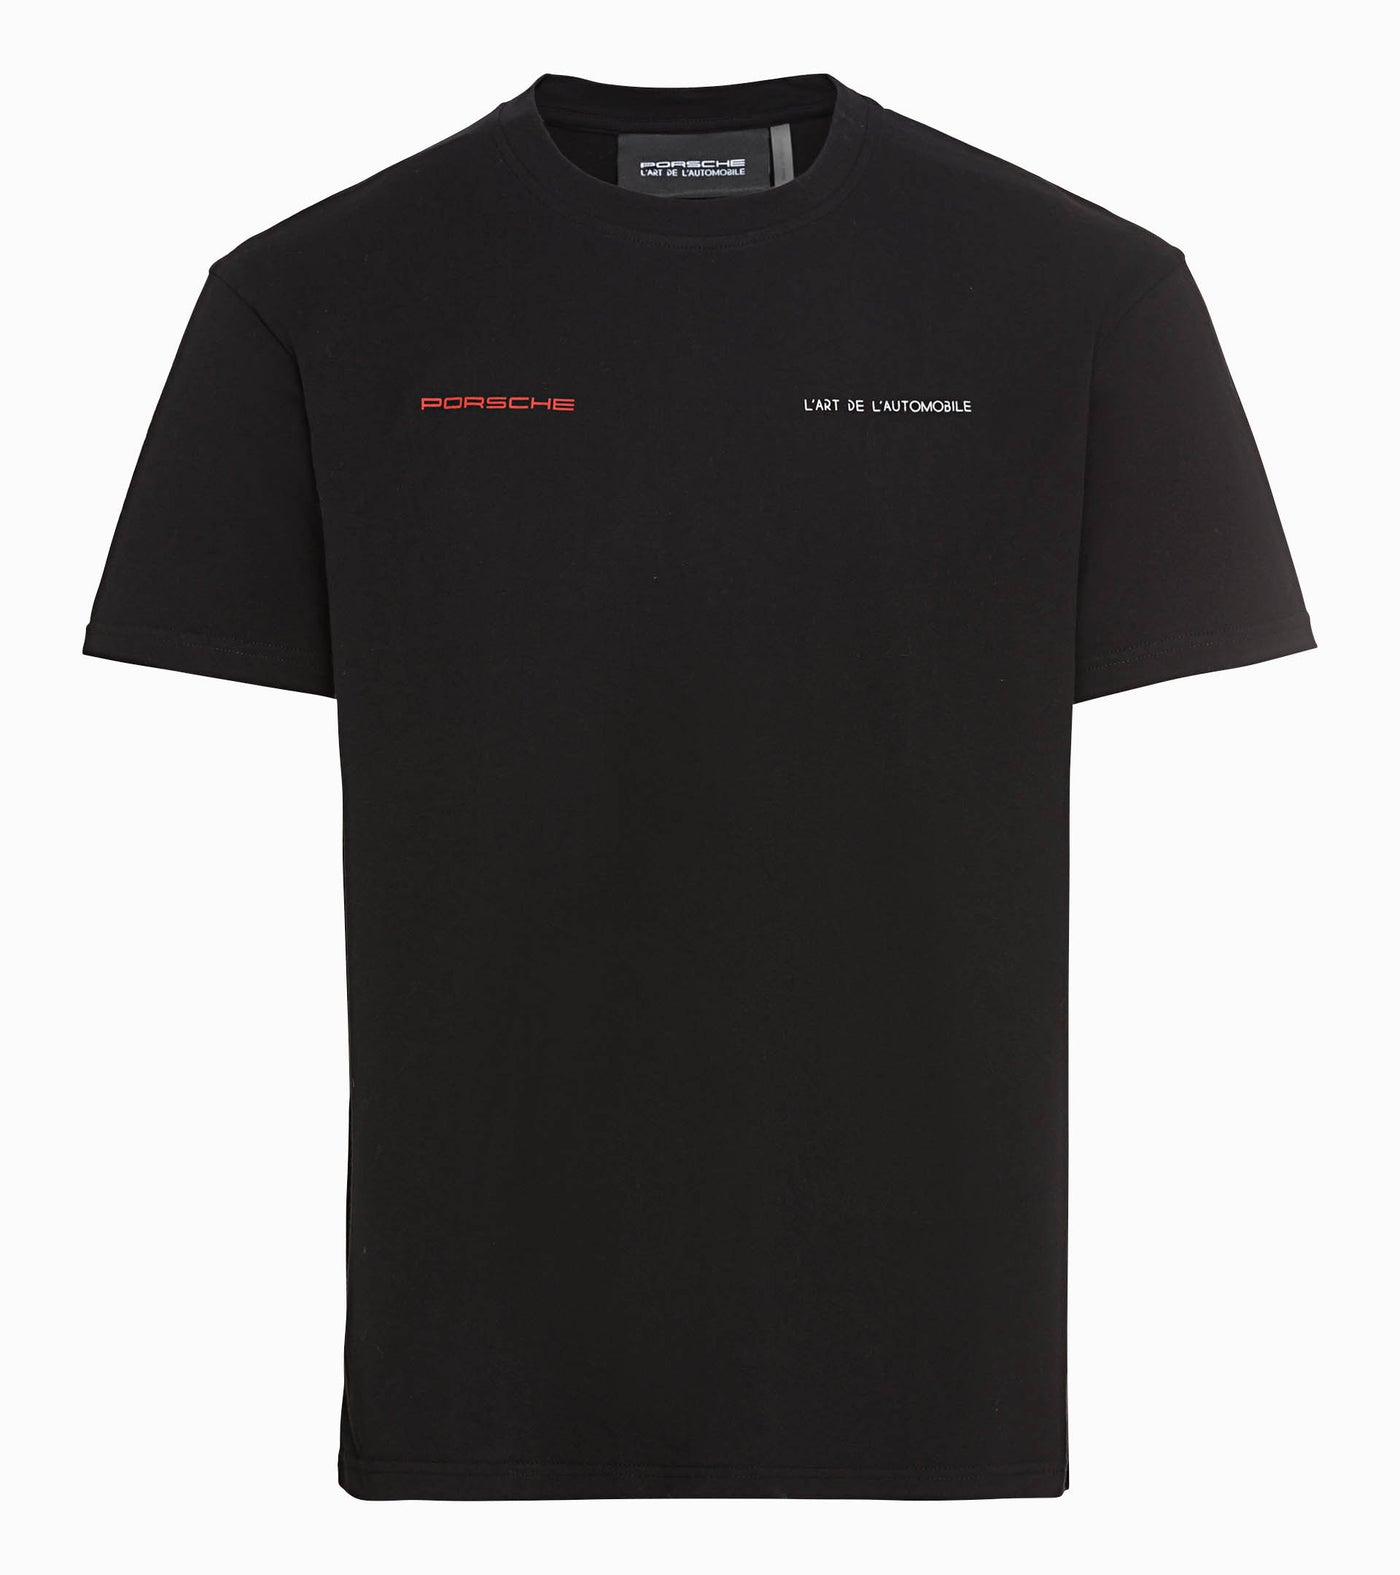 Porsche Men's T-shirt - 968 L'ART X Porsche